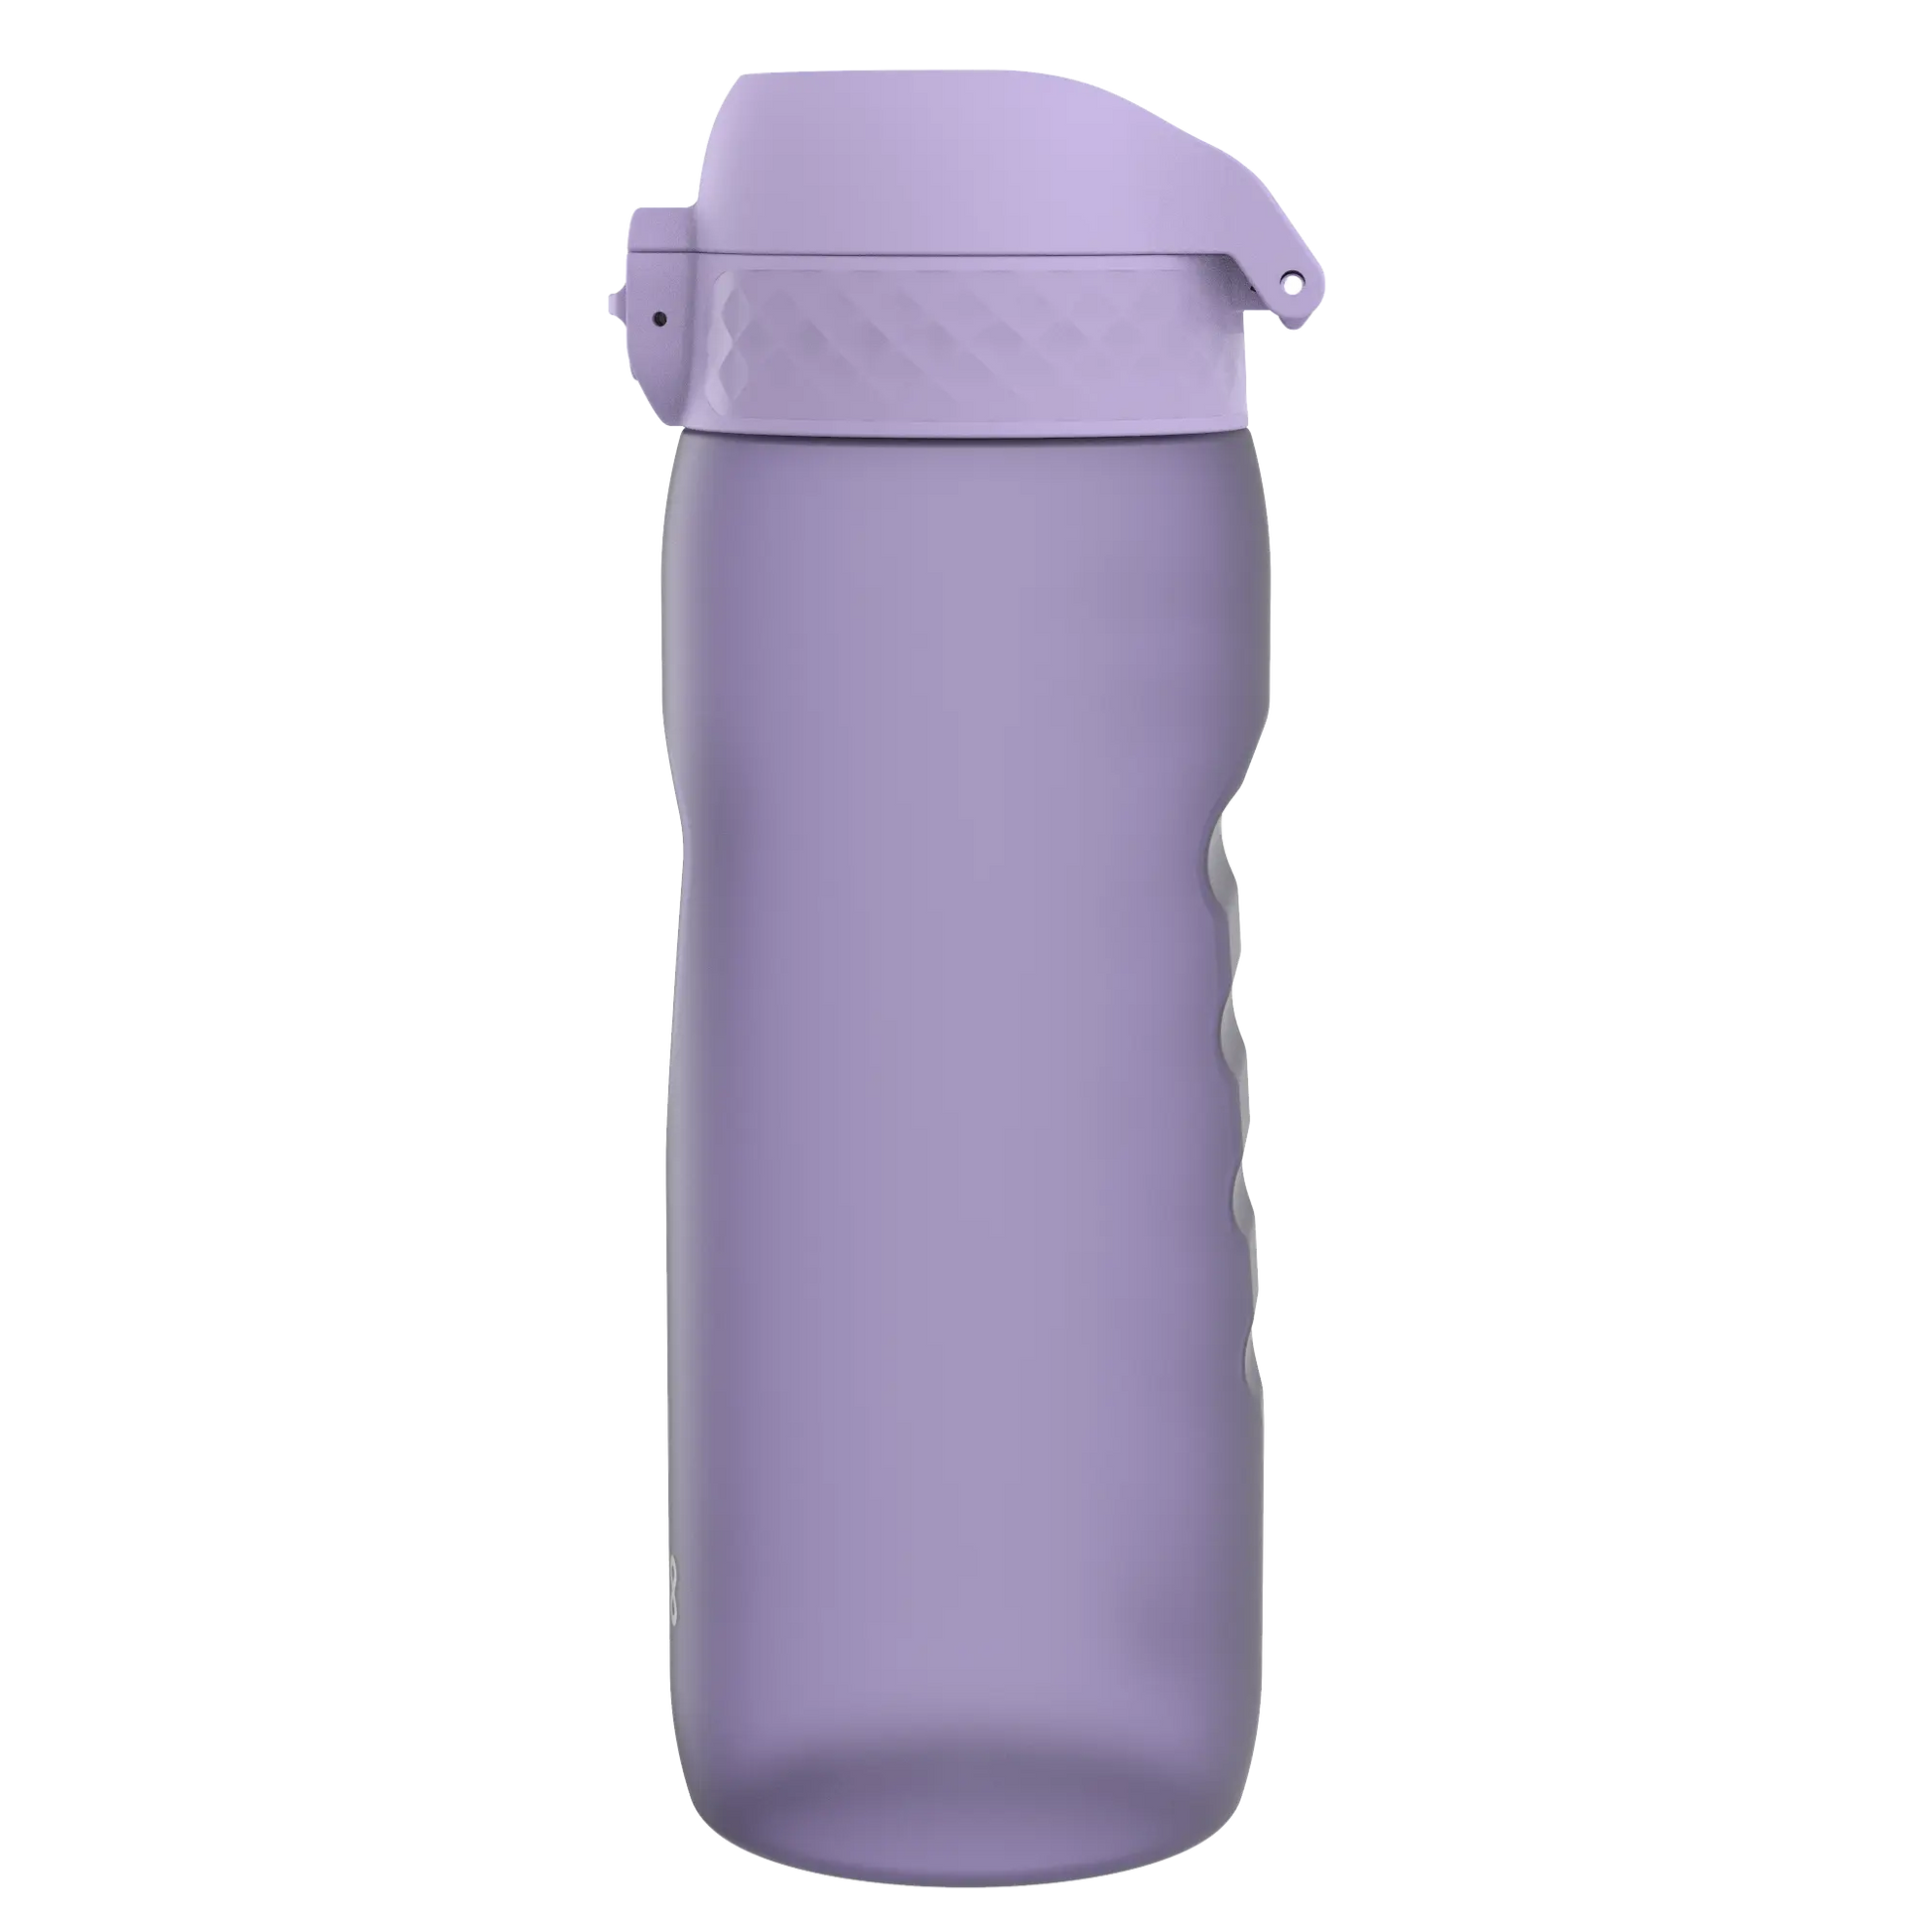 Leak Proof Cycling Water Bottle, Recyclon™, Light Purple, 750ml (24oz) Ion8